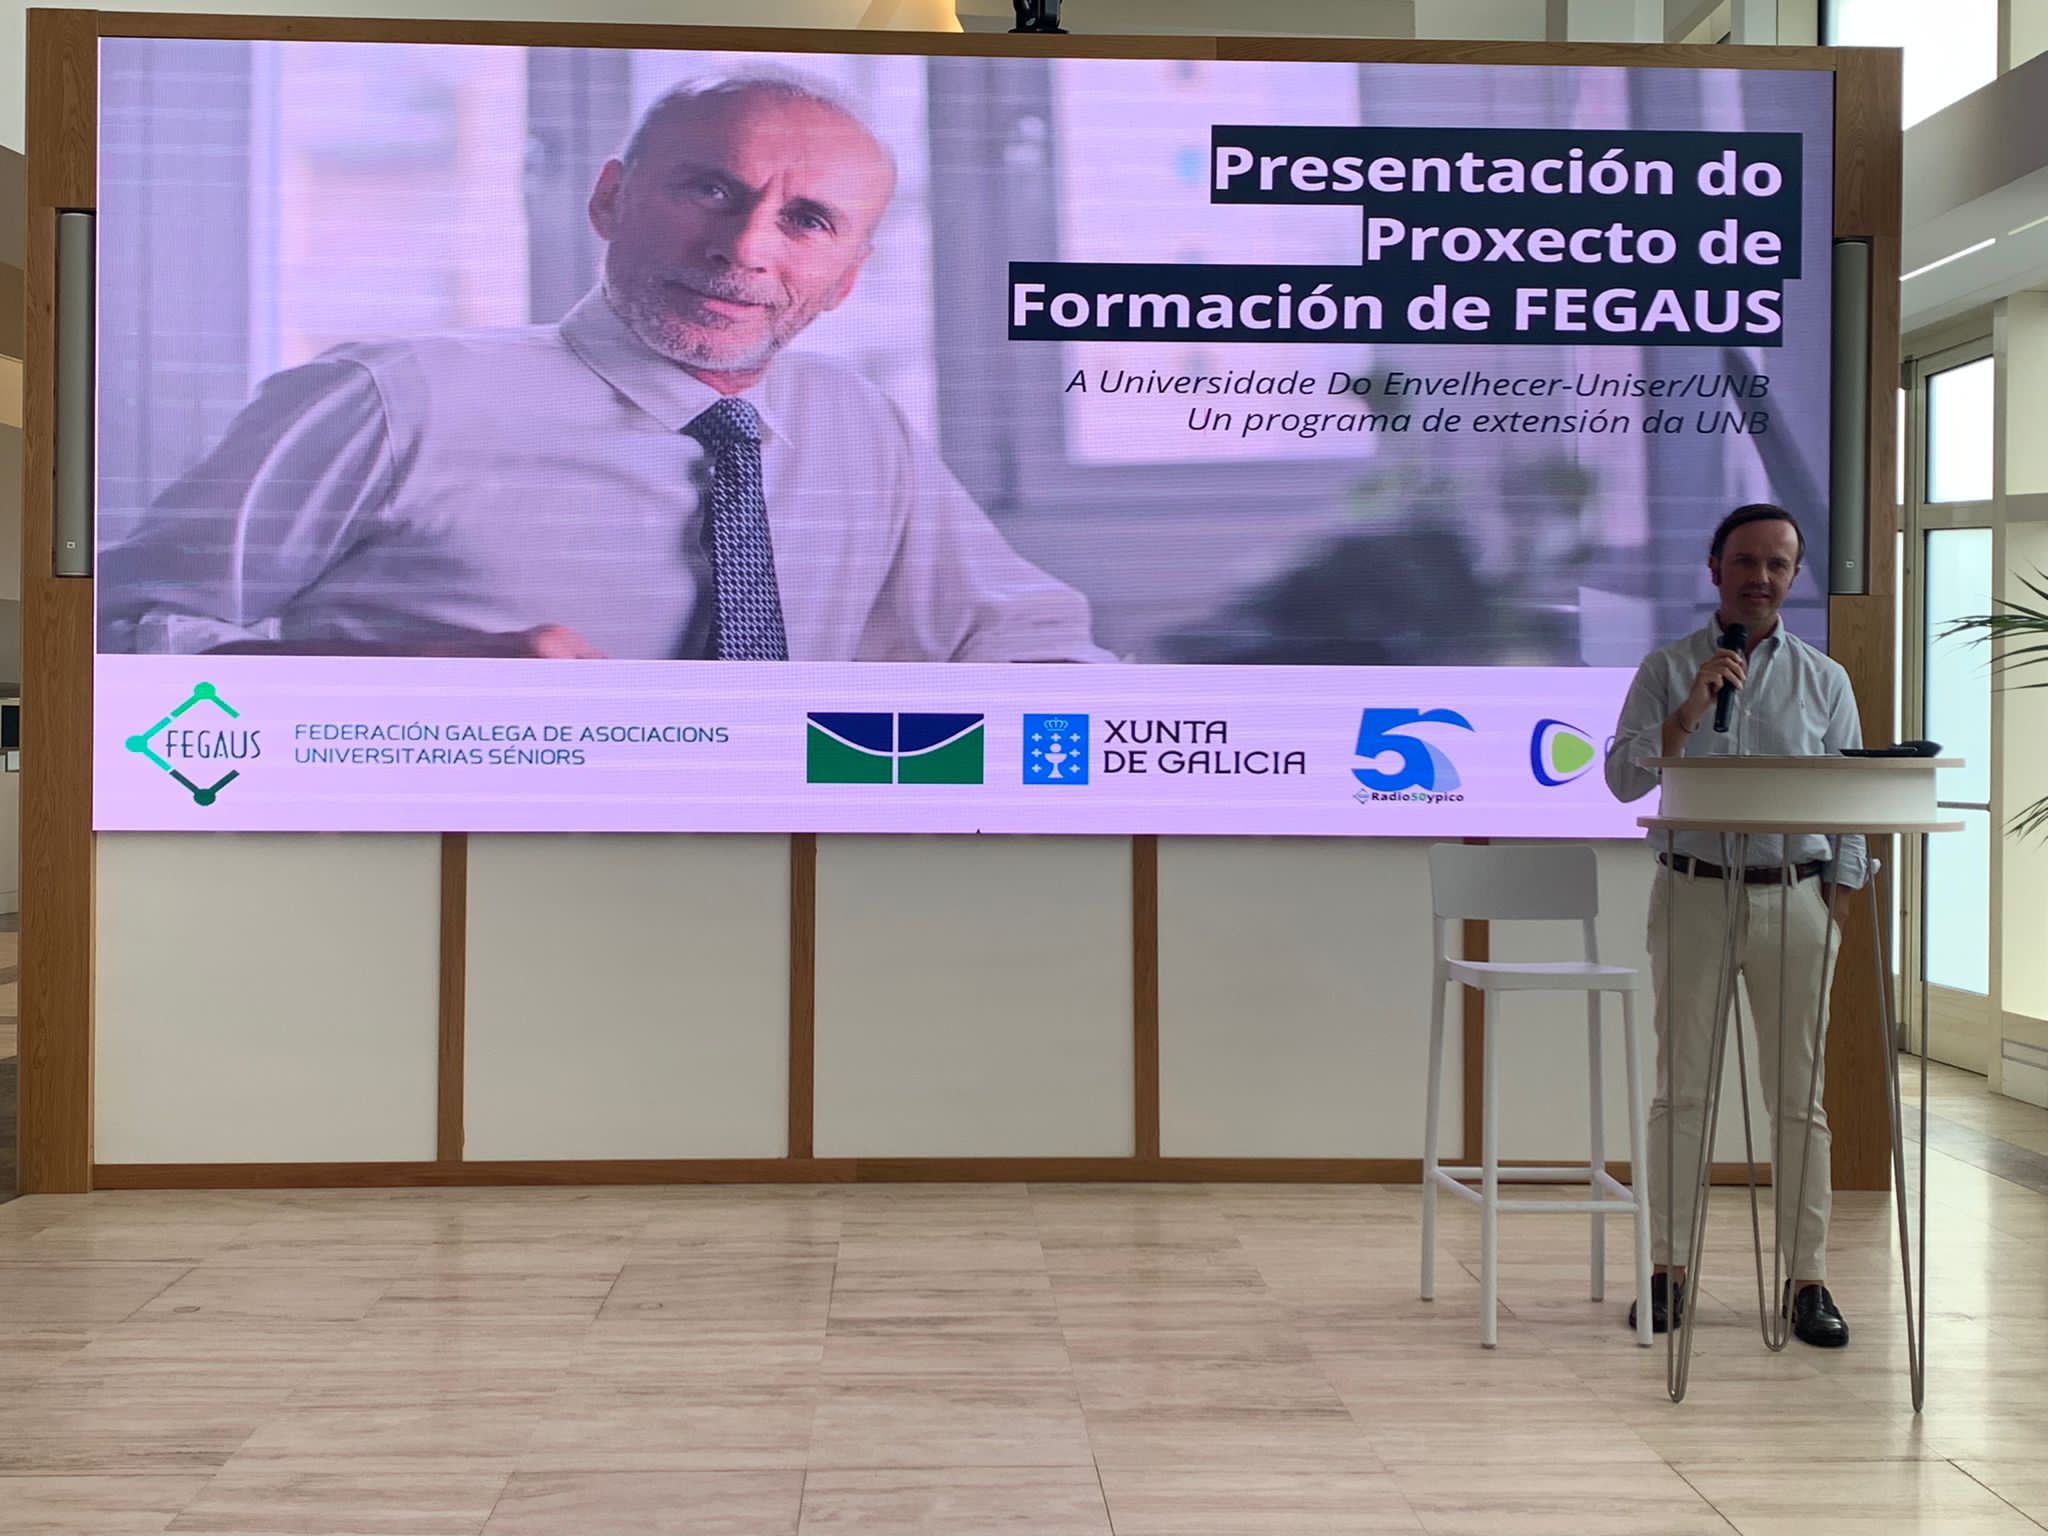 Presentación do proxecto de formación de FEGAUS.